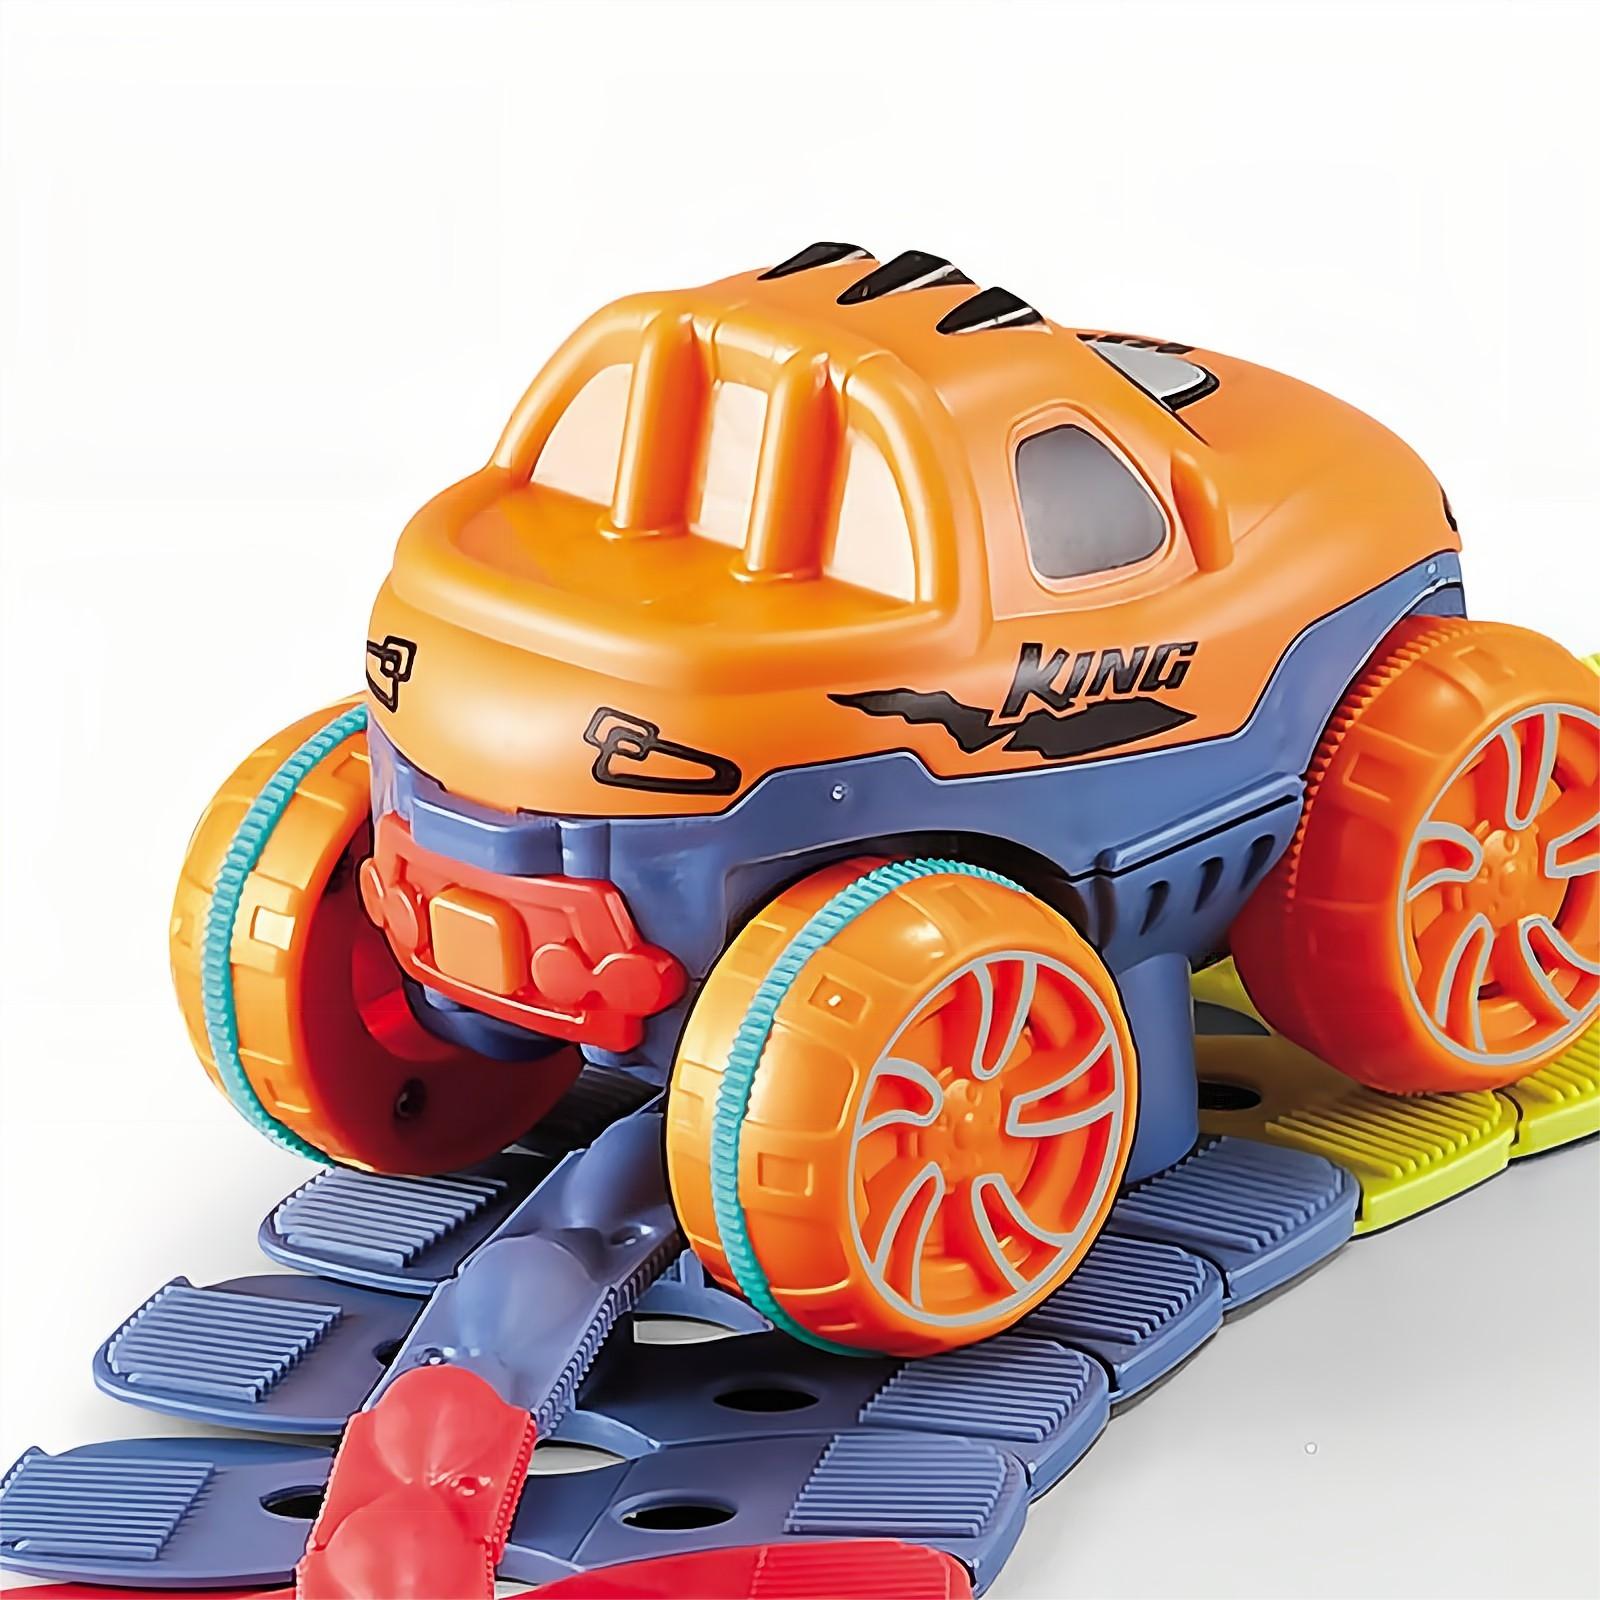  Juguetes para niños de 3 años, juguetes para niños y niñas de 3  a 5 años, 184 piezas de juguetes para niños pequeños, juego de pista de  carreras con pista flexible